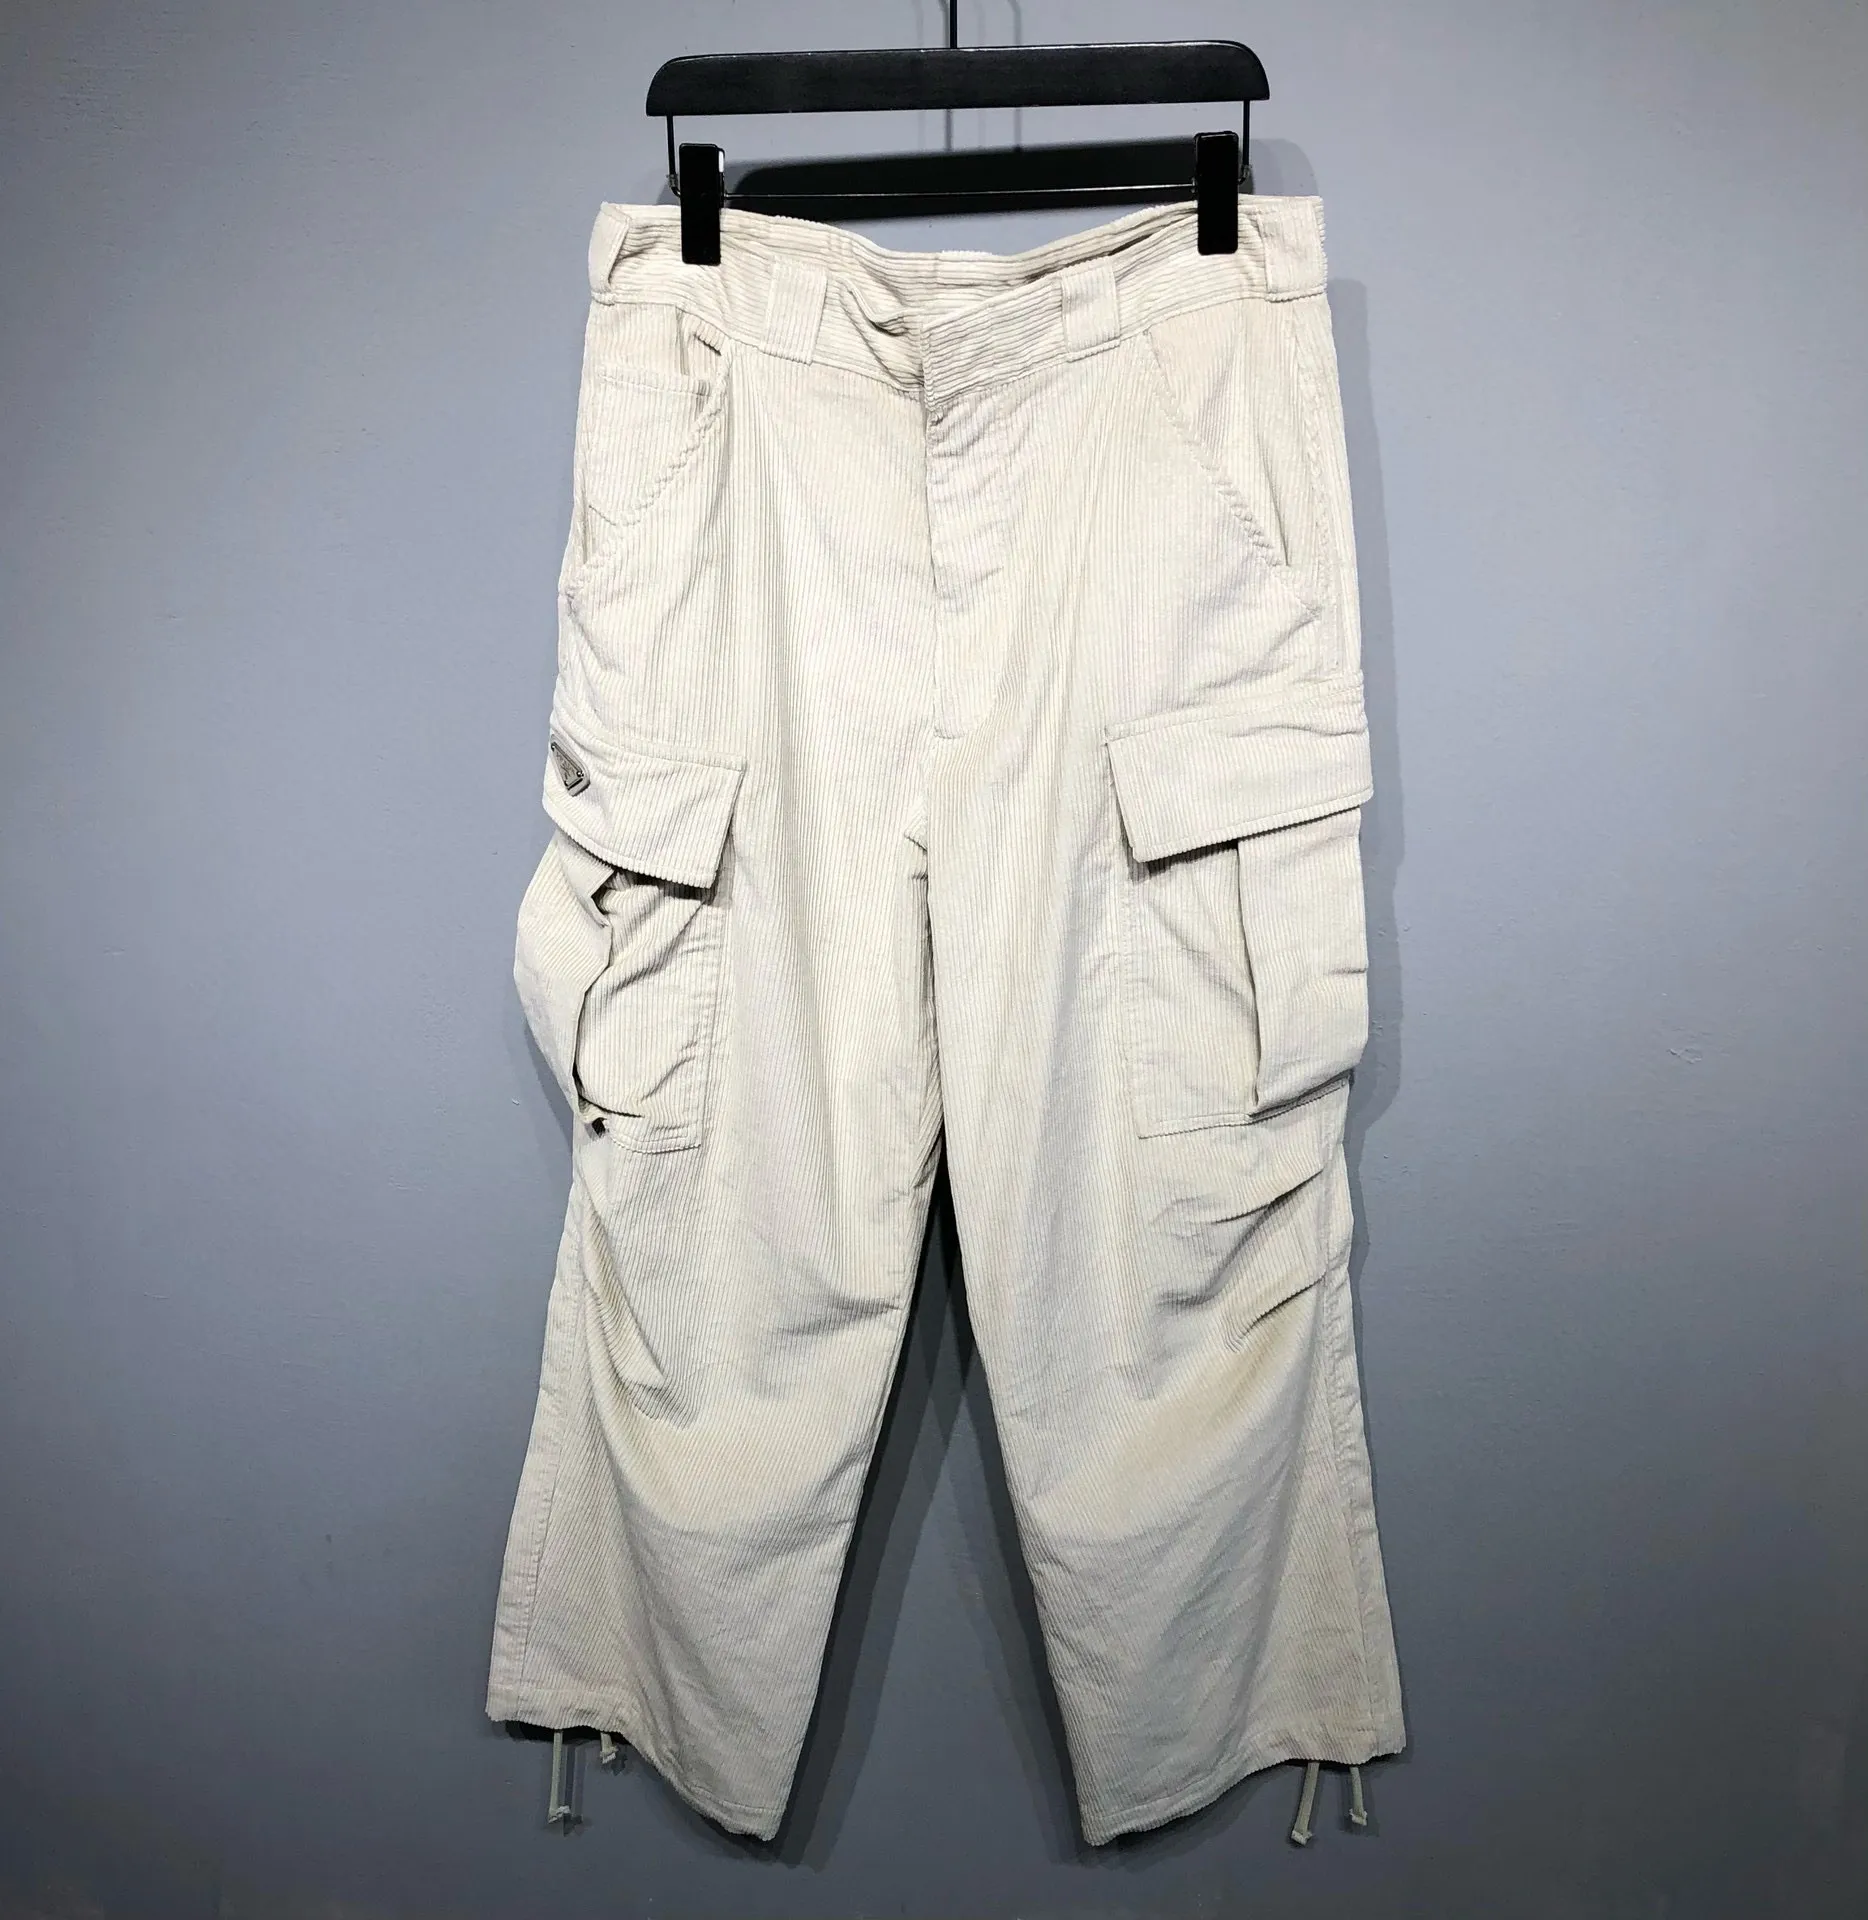 Мужские шорты больших размеров, летняя пляжная одежда в полярном стиле из чистого хлопка l7o25